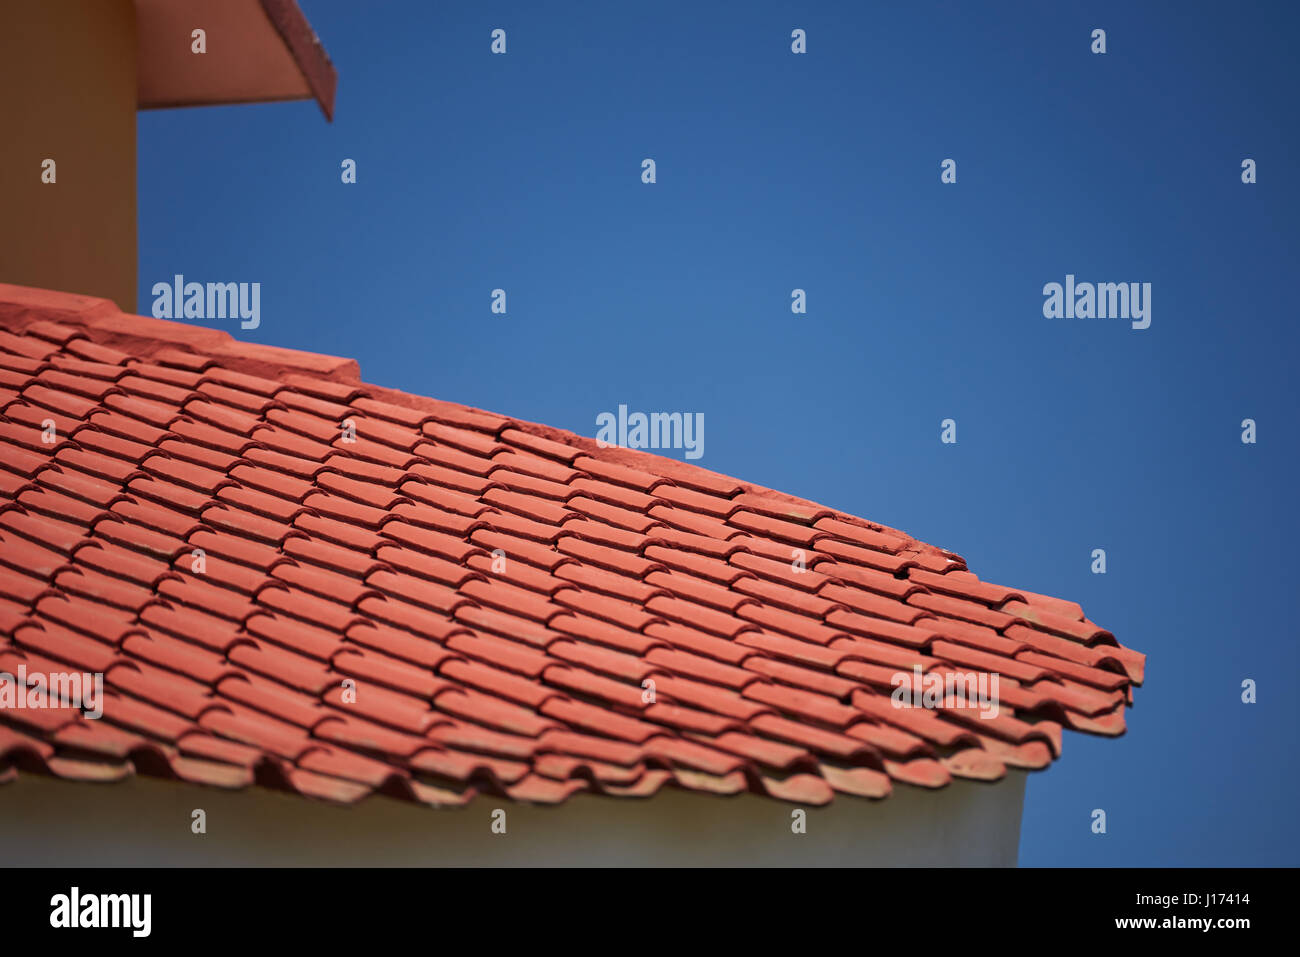 Rossa argilla piastrelle per tetto di casa con blue sky spazio di copia Foto Stock